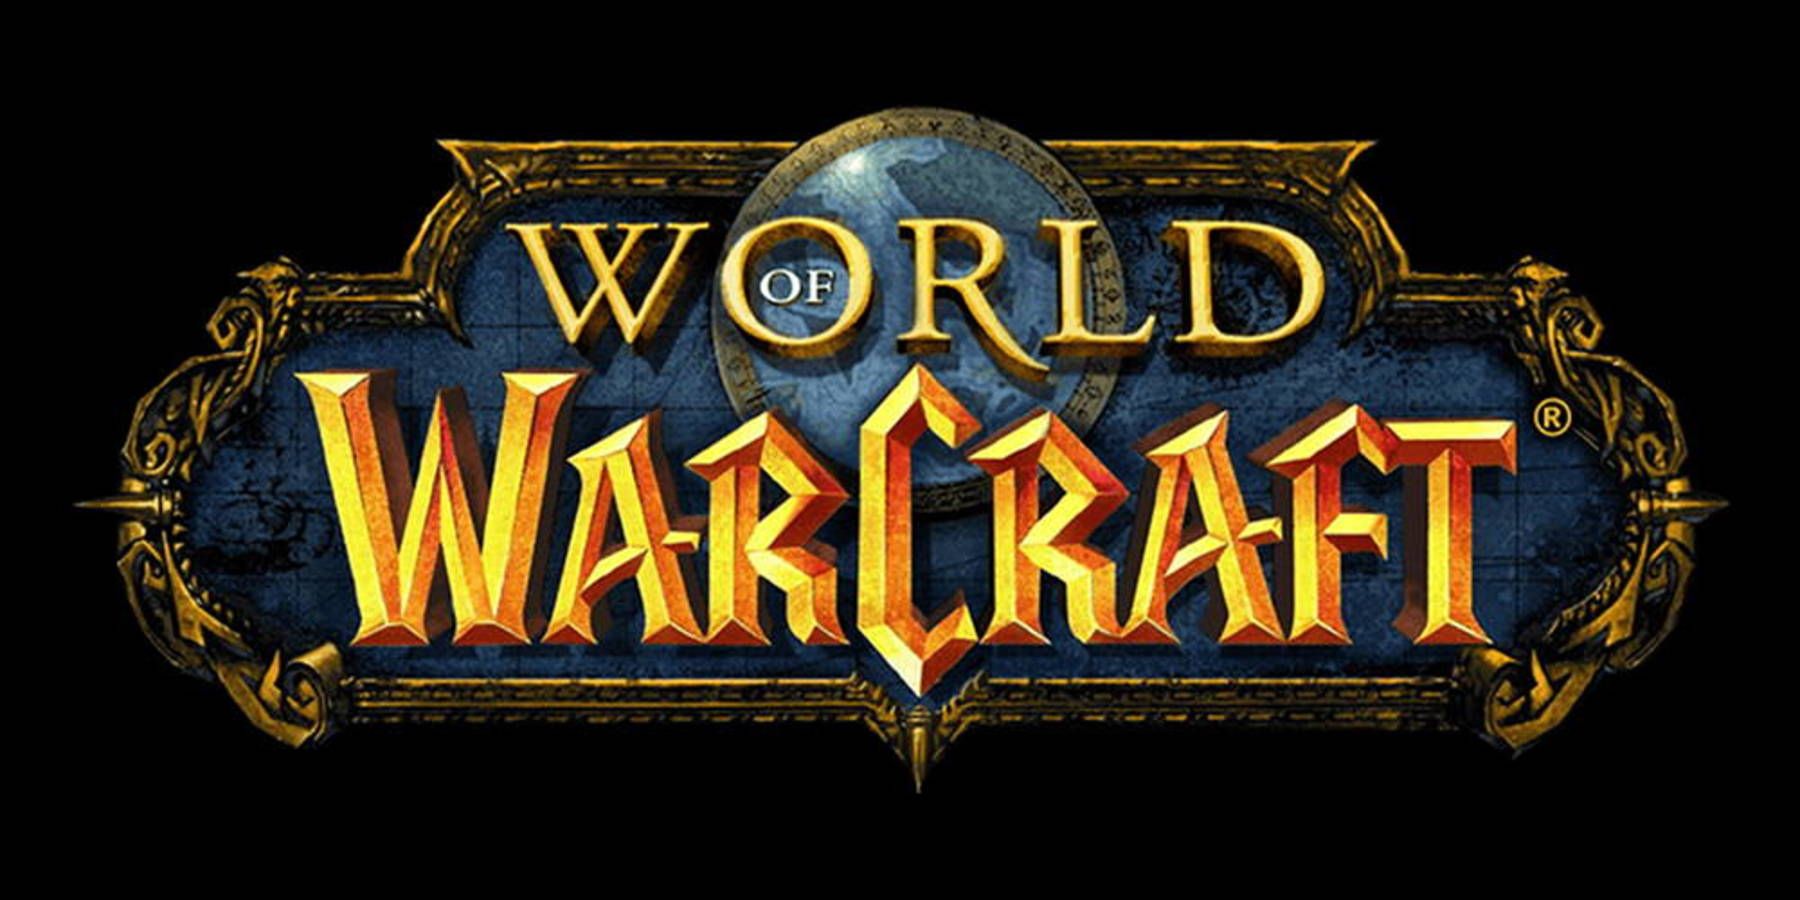 על פי הדיווחים, משחק הנייד Warcraft בוטל